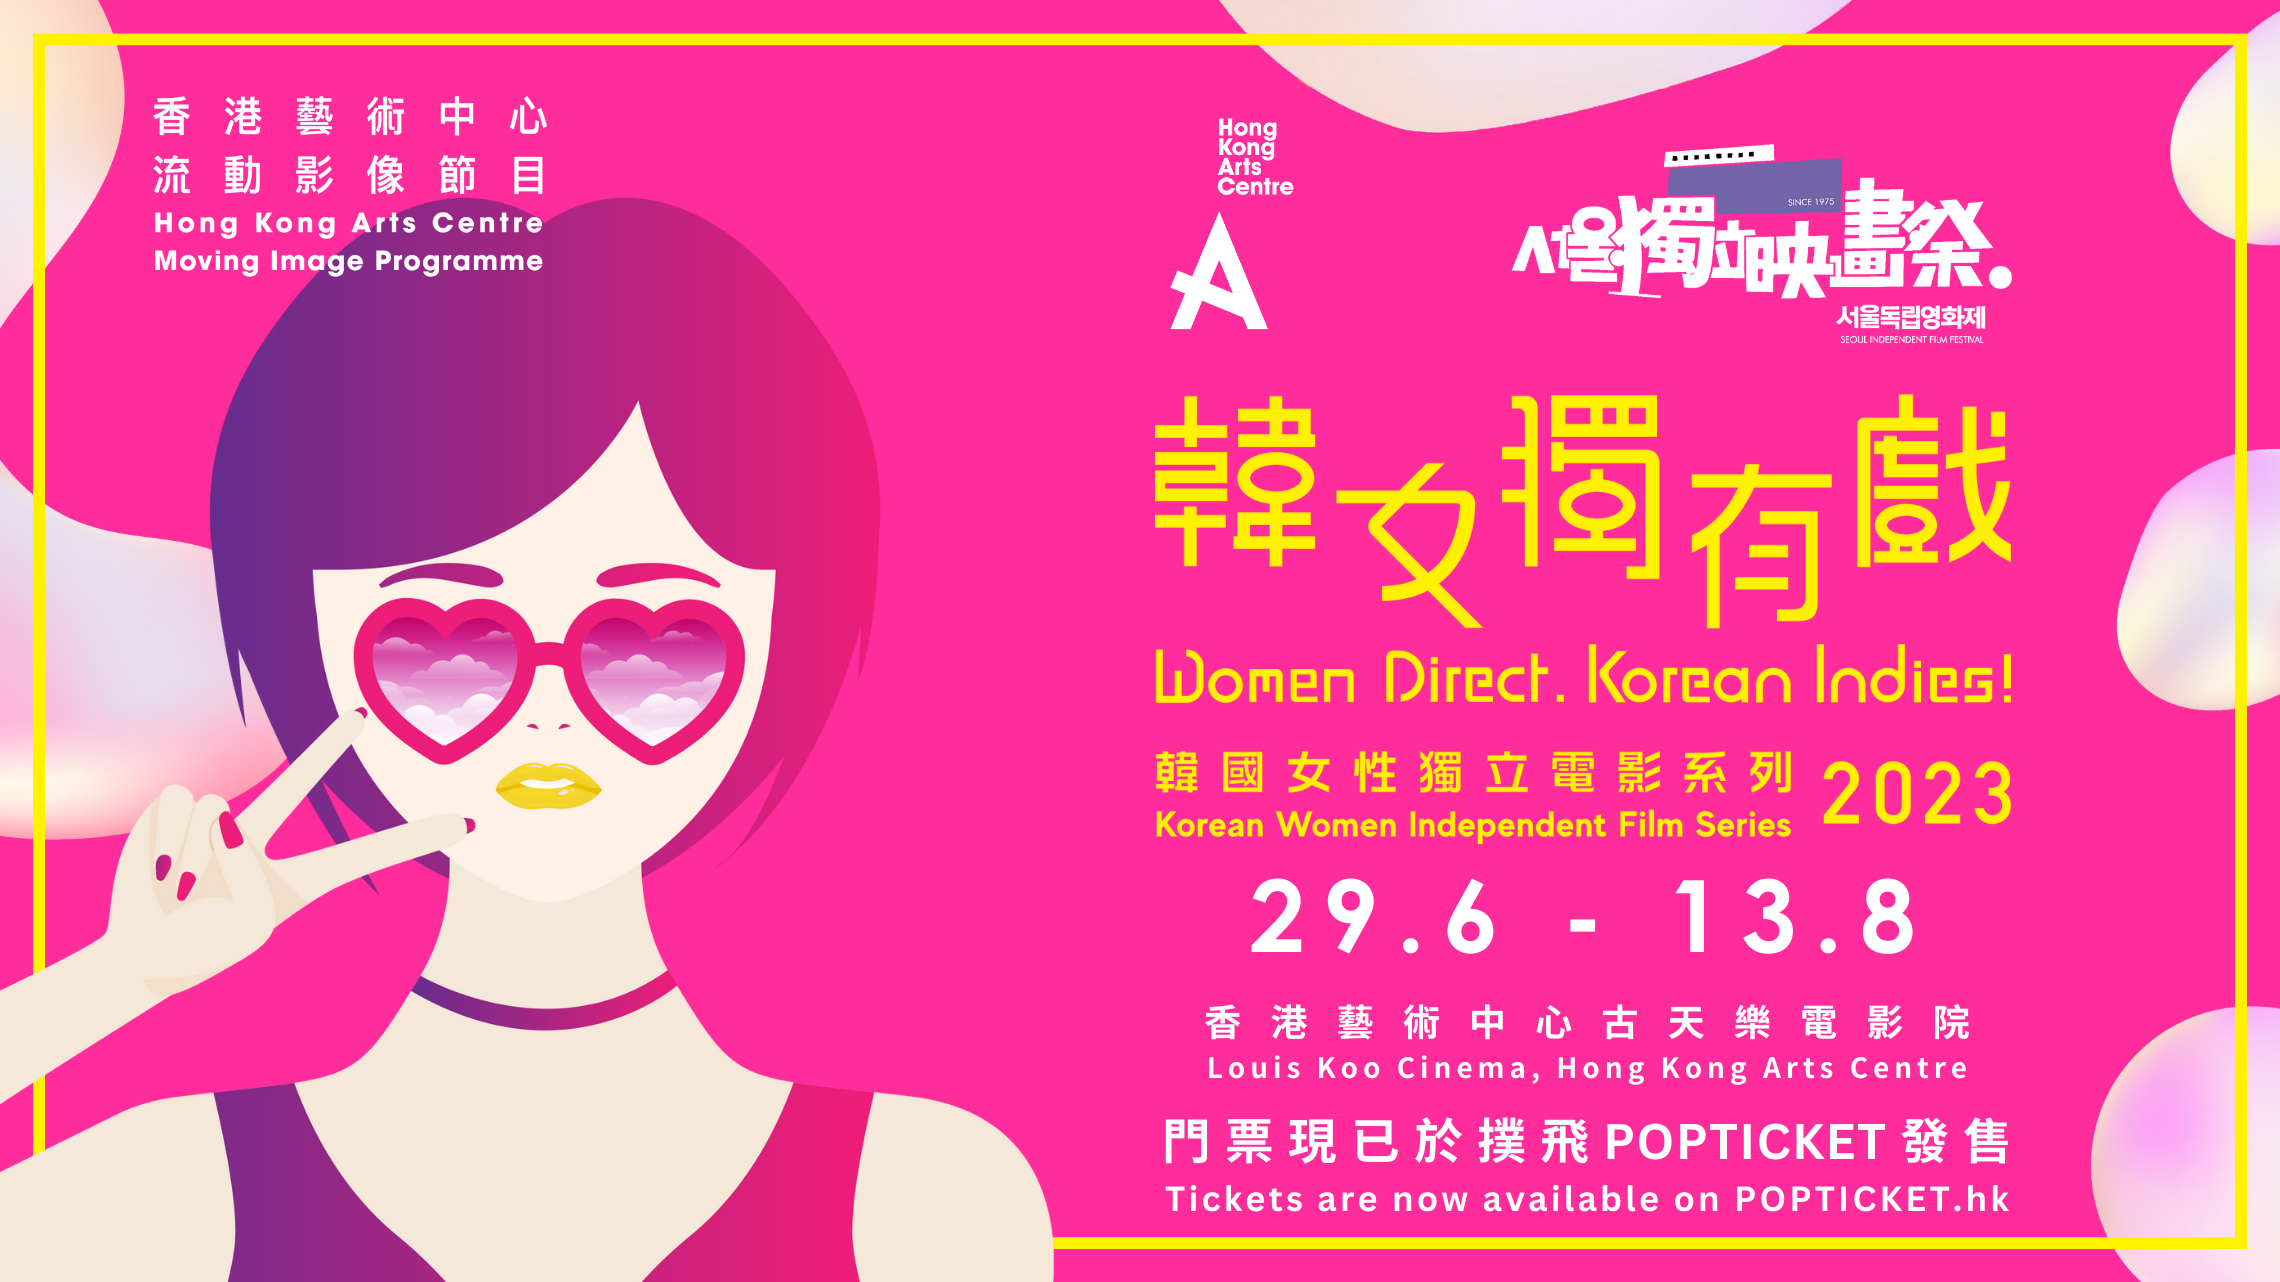 香港藝術中心「韓女獨有戲」放映-8部長片描繪女性生活